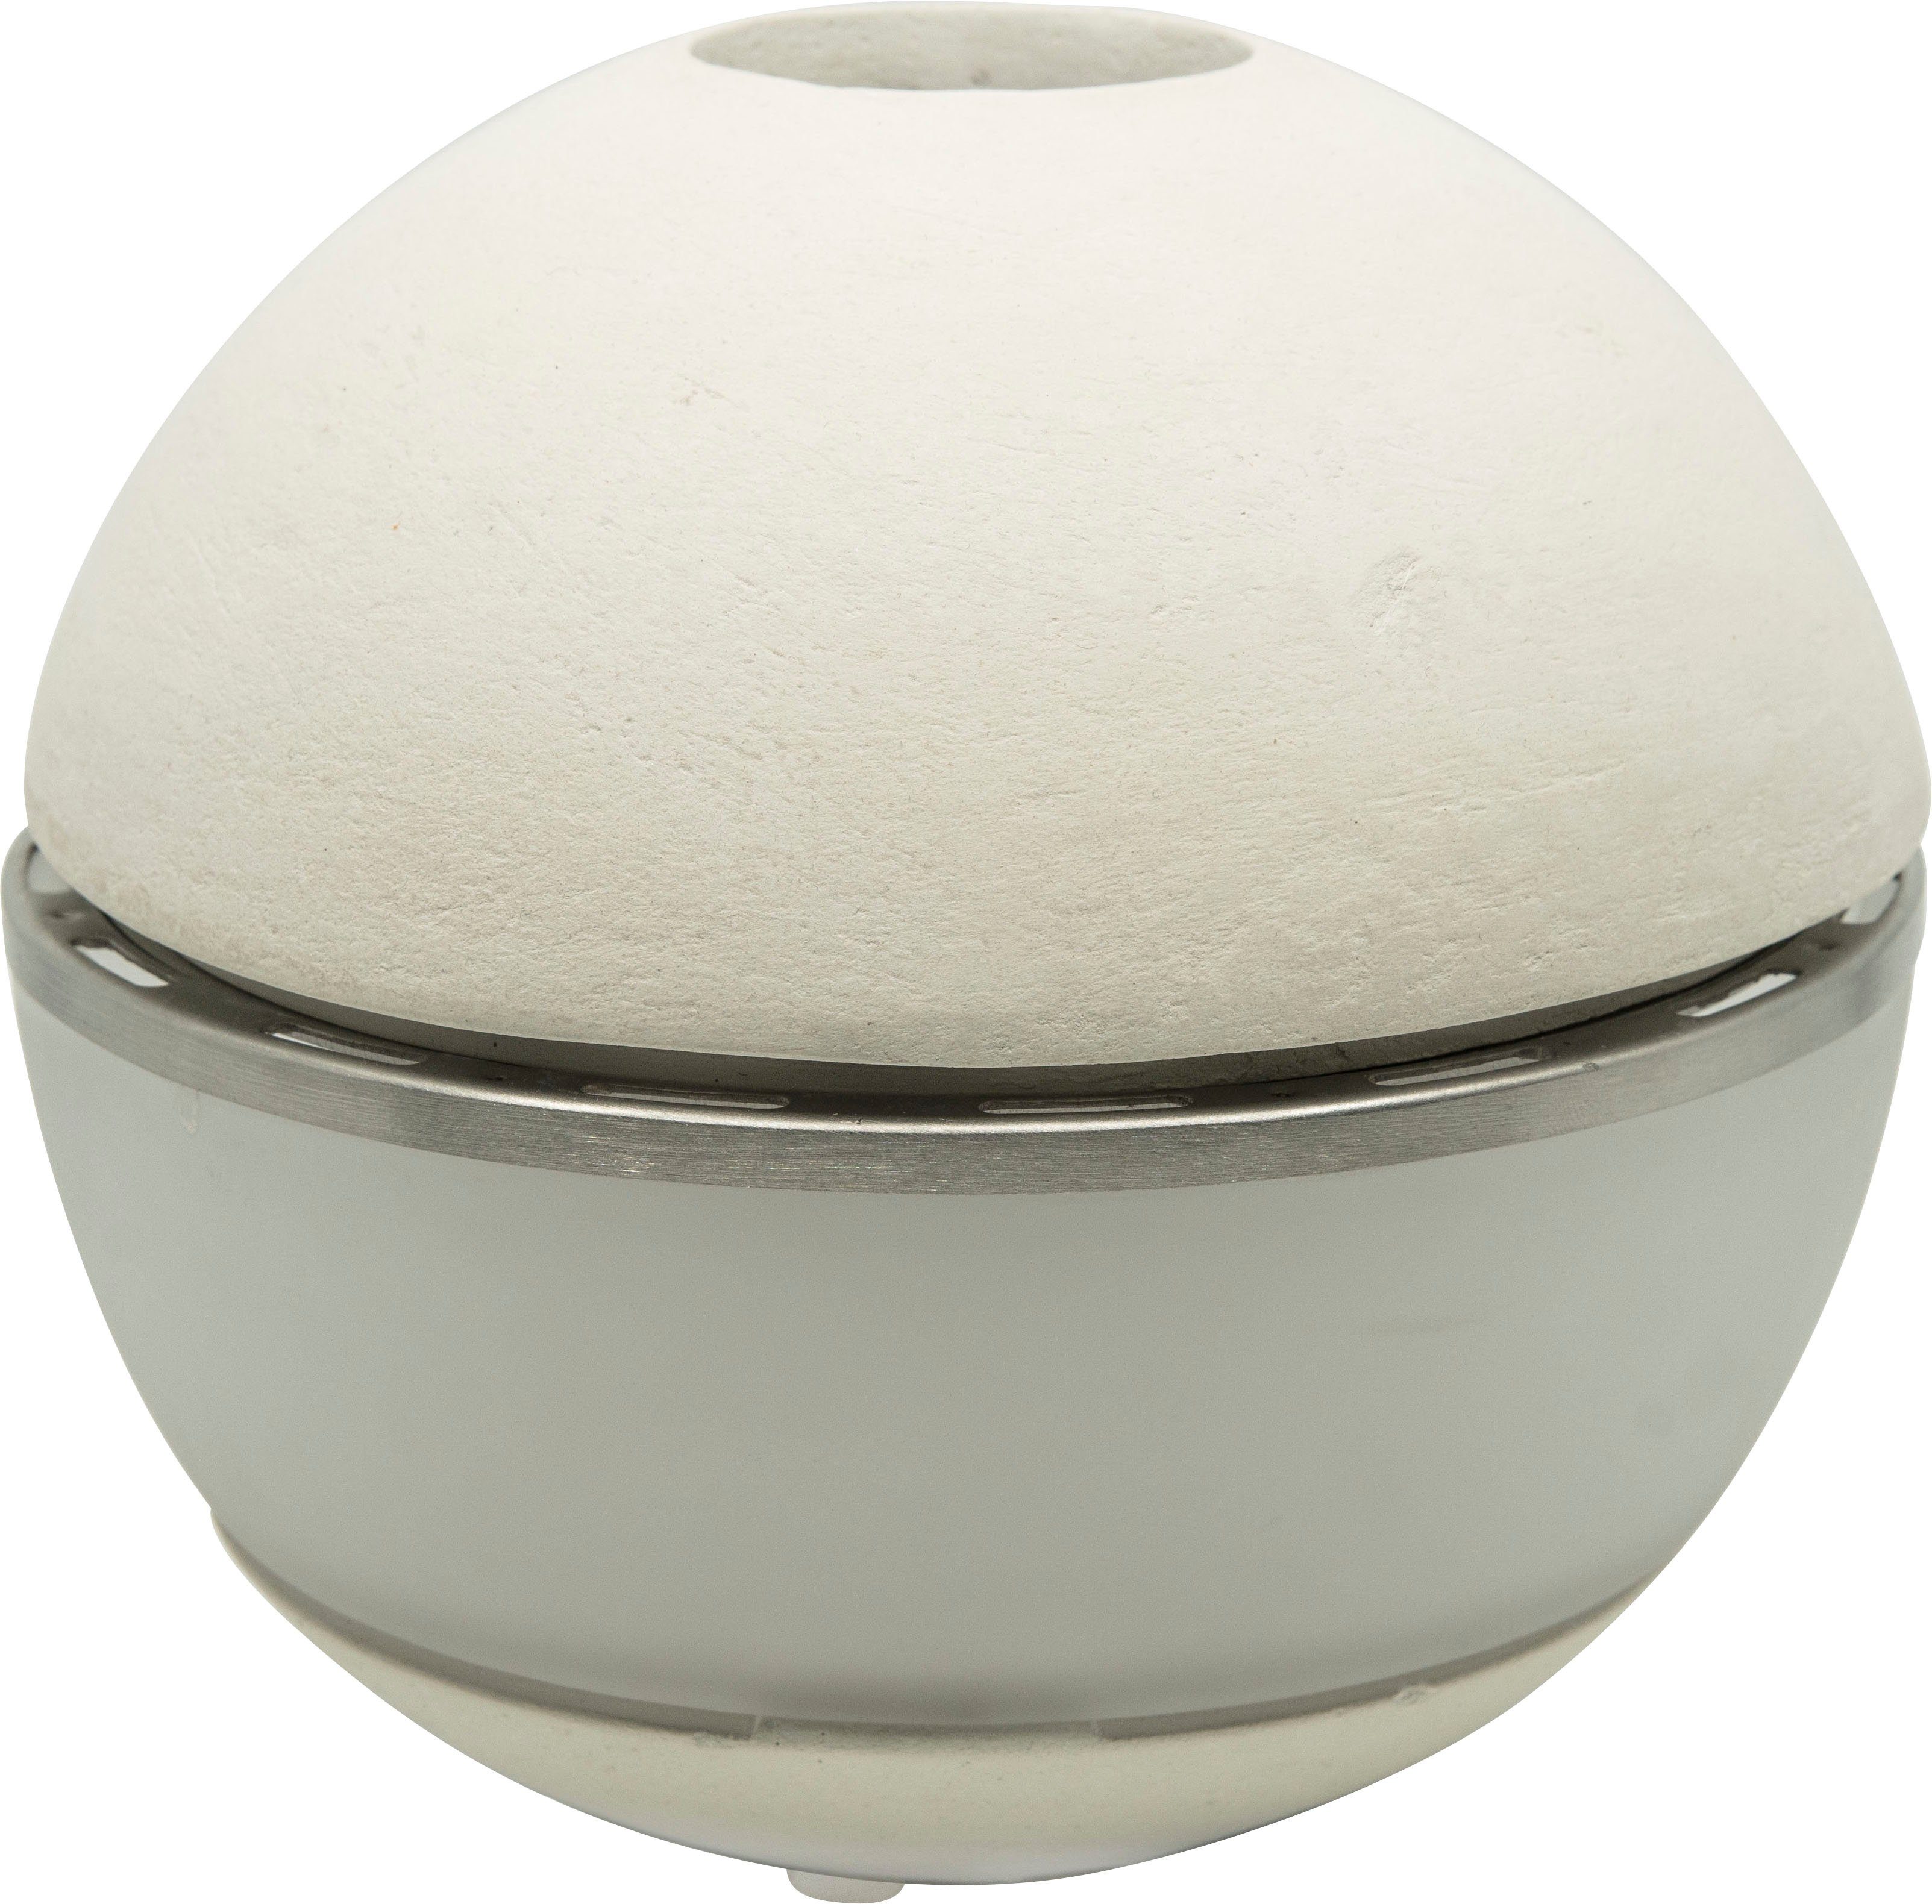 hecht international Duftlampe Salzofen SALINO, ØxH: 17,5x16,5 cm weiß